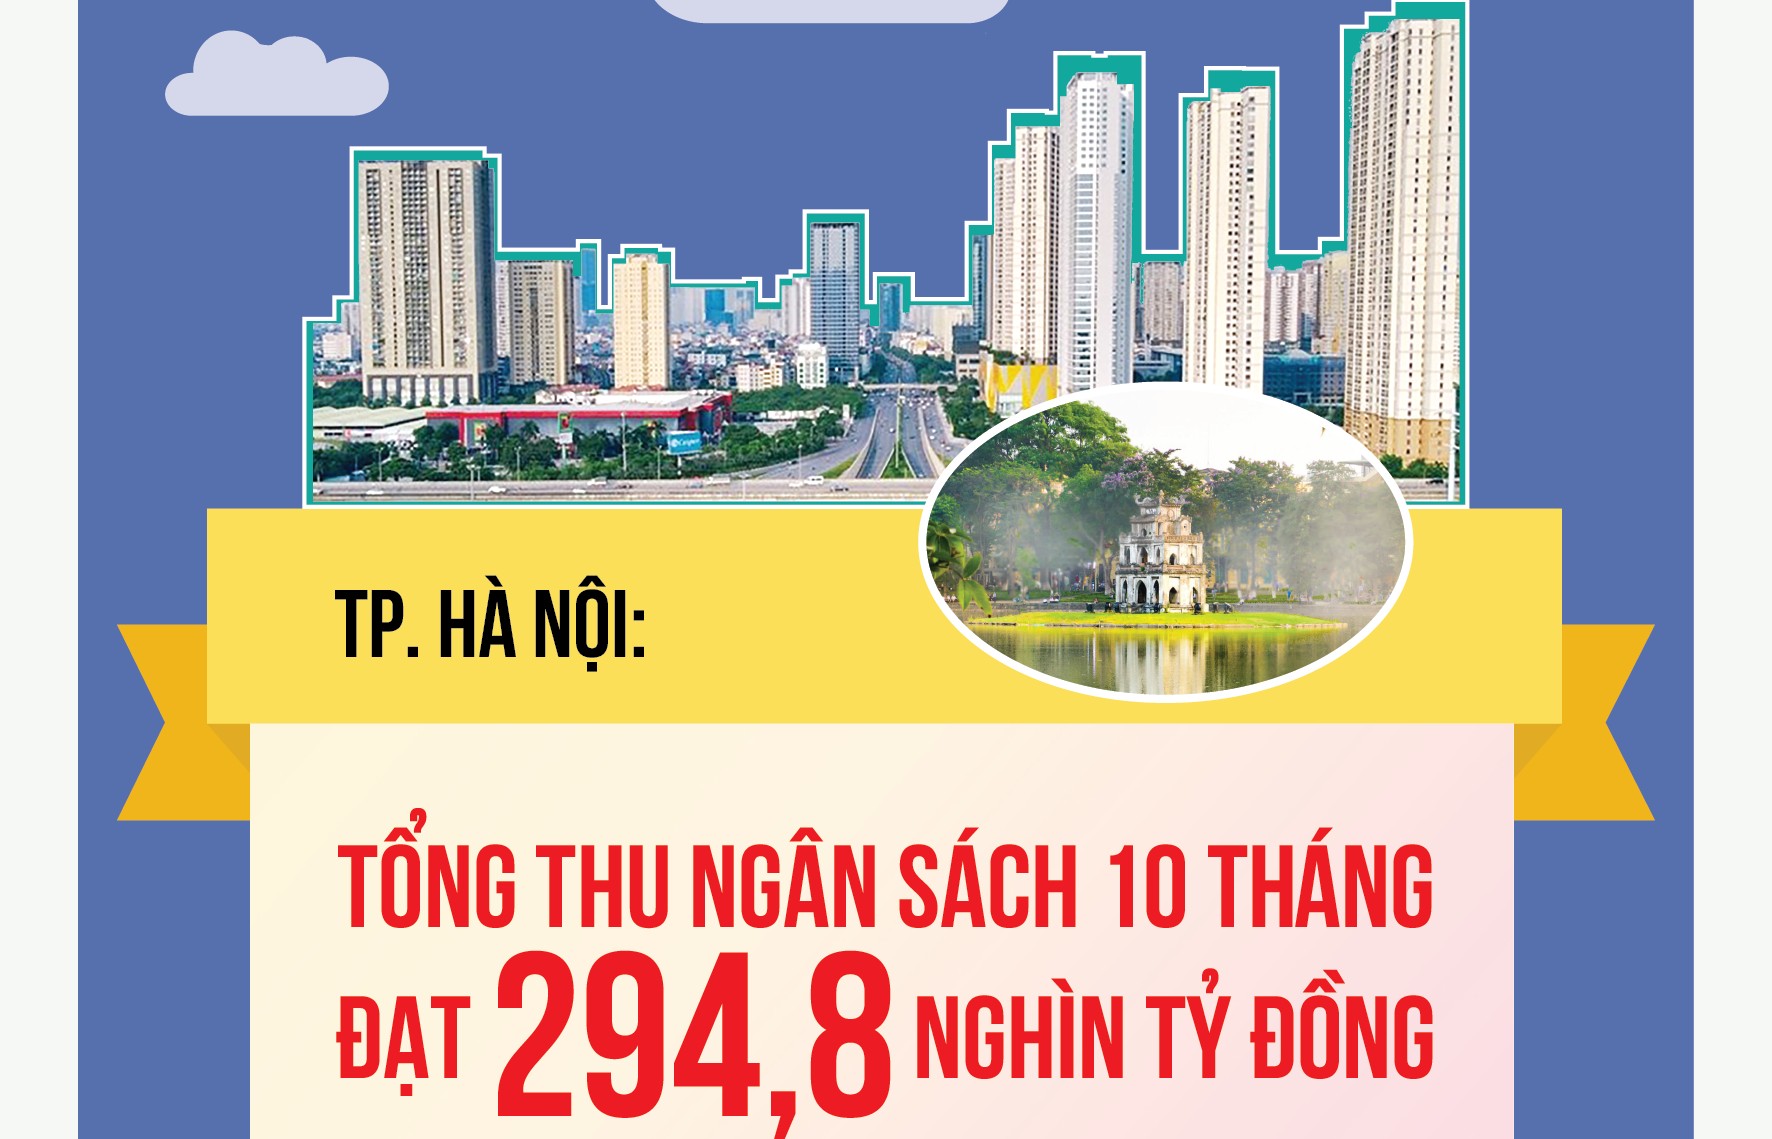 TP. Hà Nội: Thu ngân sách nhà nước 10 tháng tăng 12% so với cùng kỳ năm ngoái